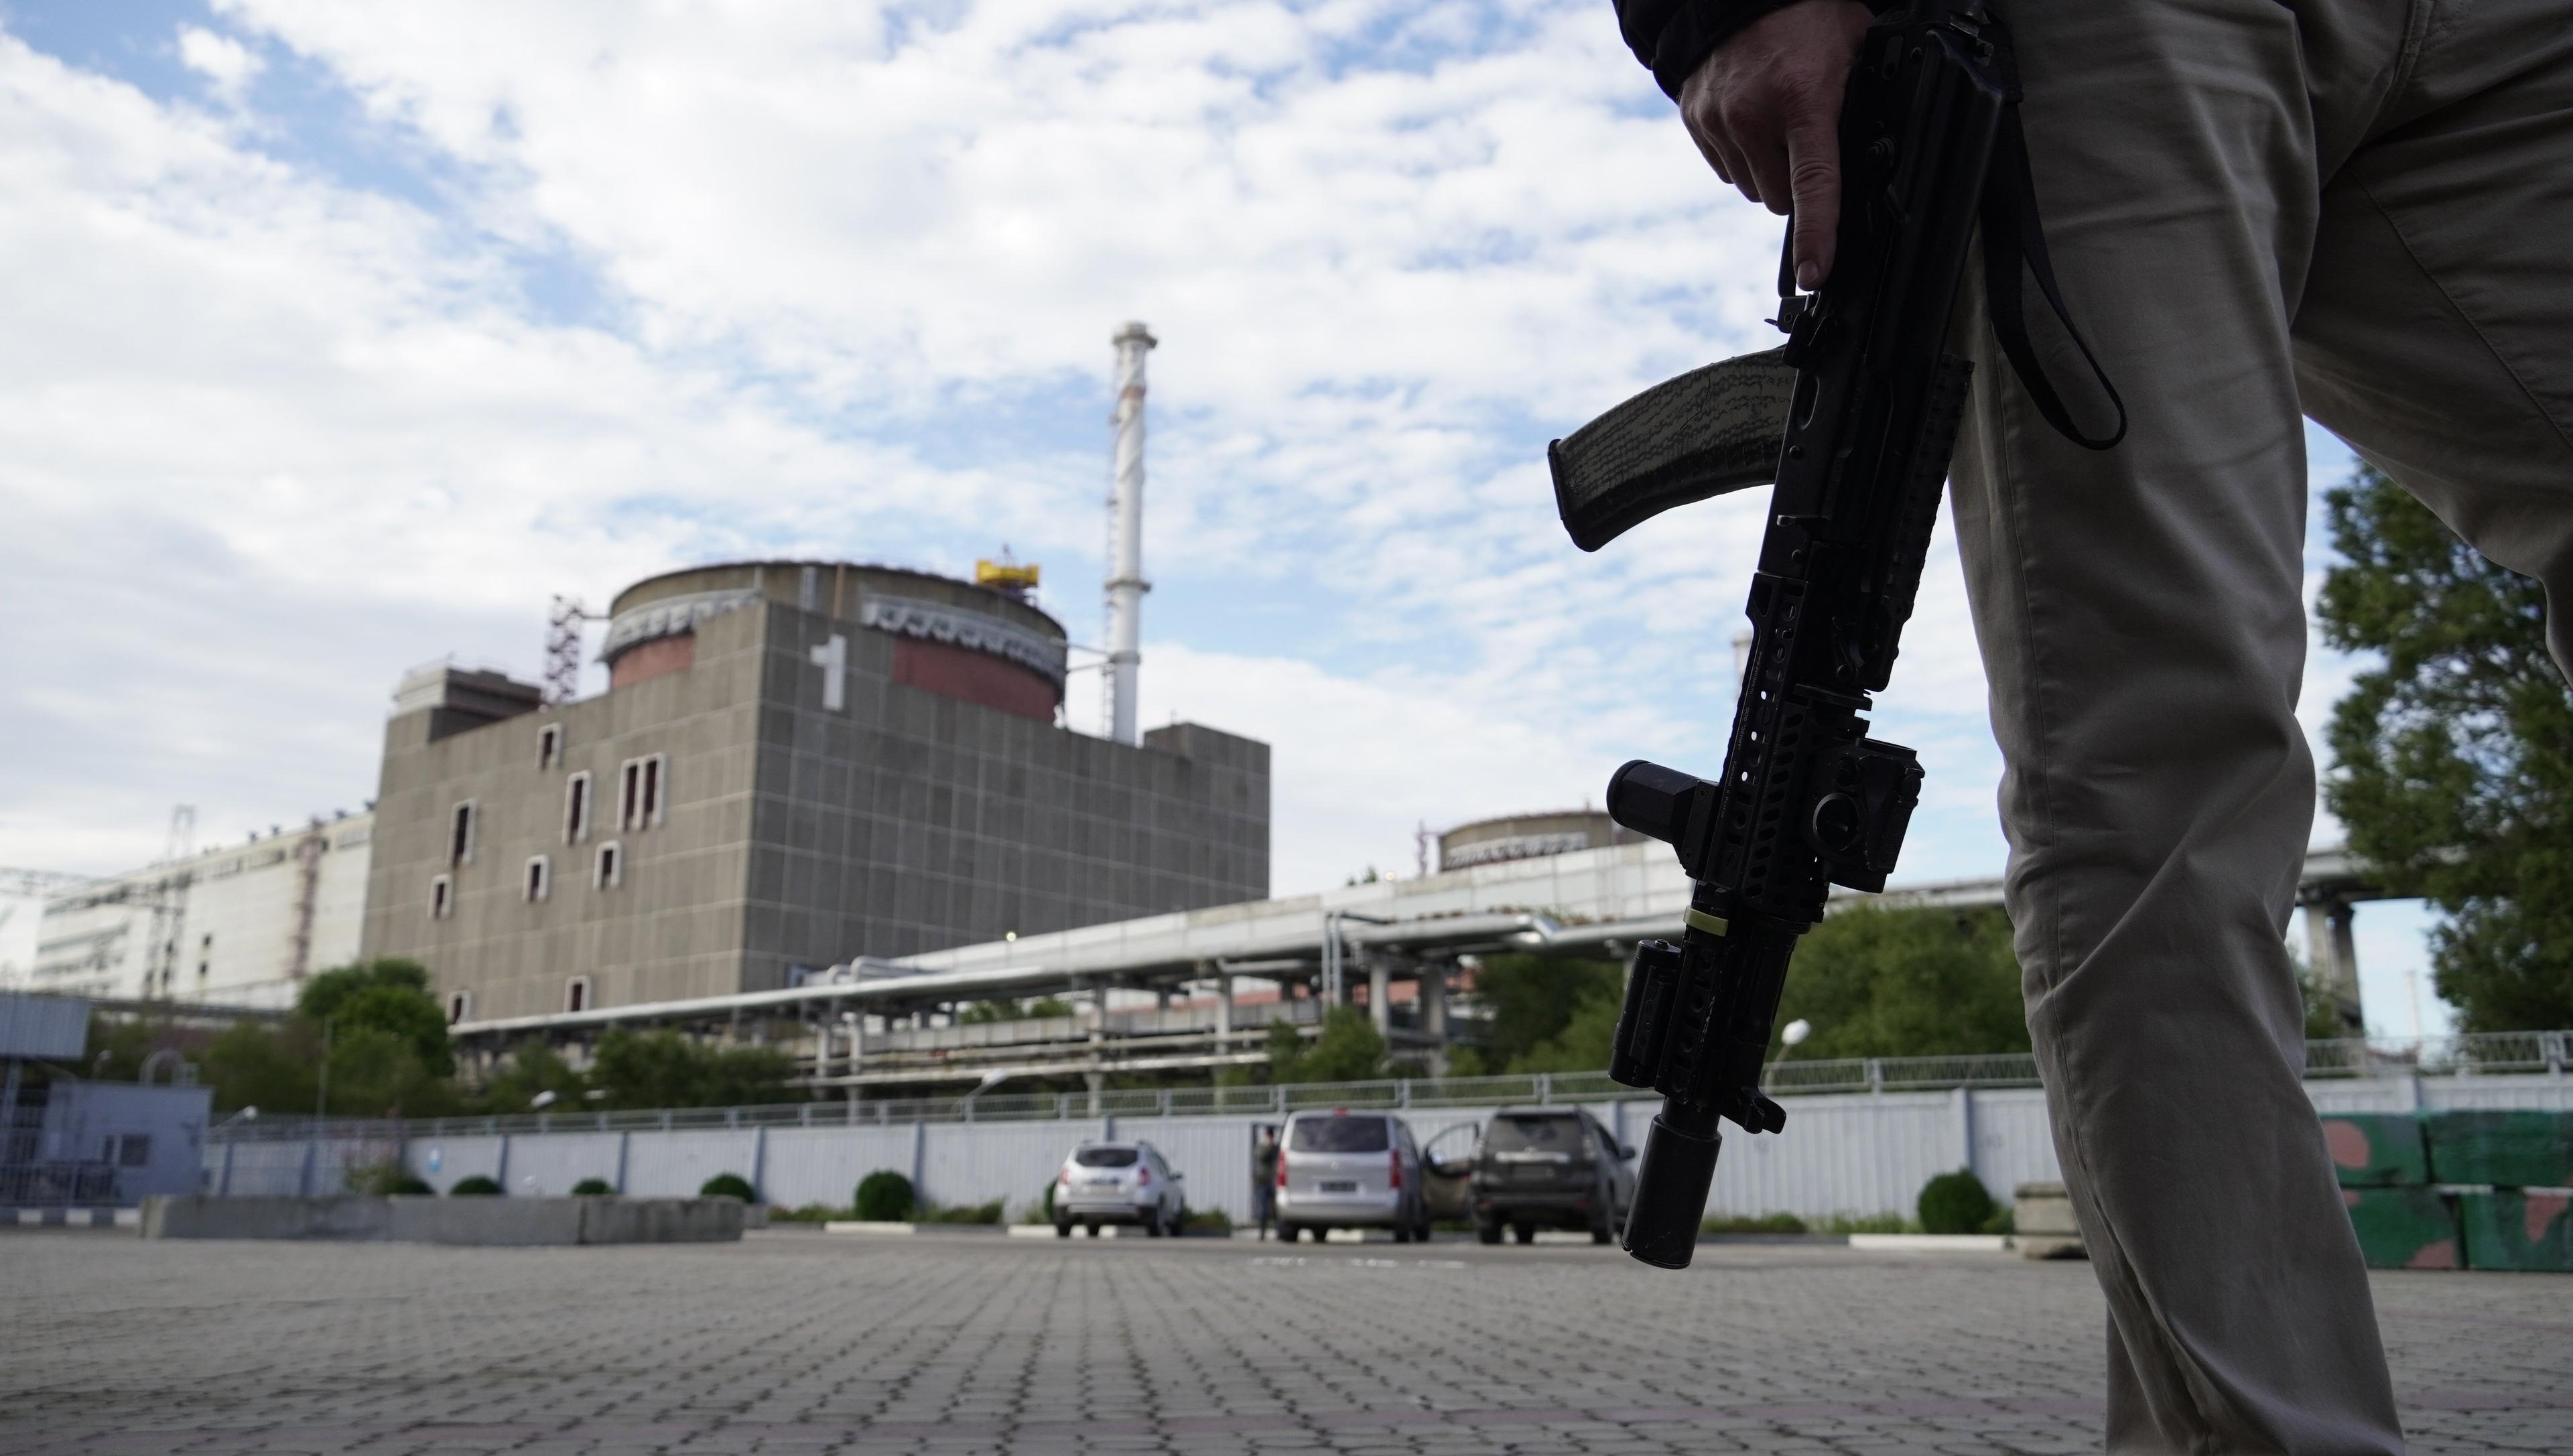 Wojskowy z karabinem patrzy na wielki budynek - Zaporoską Elektrownię Atomową